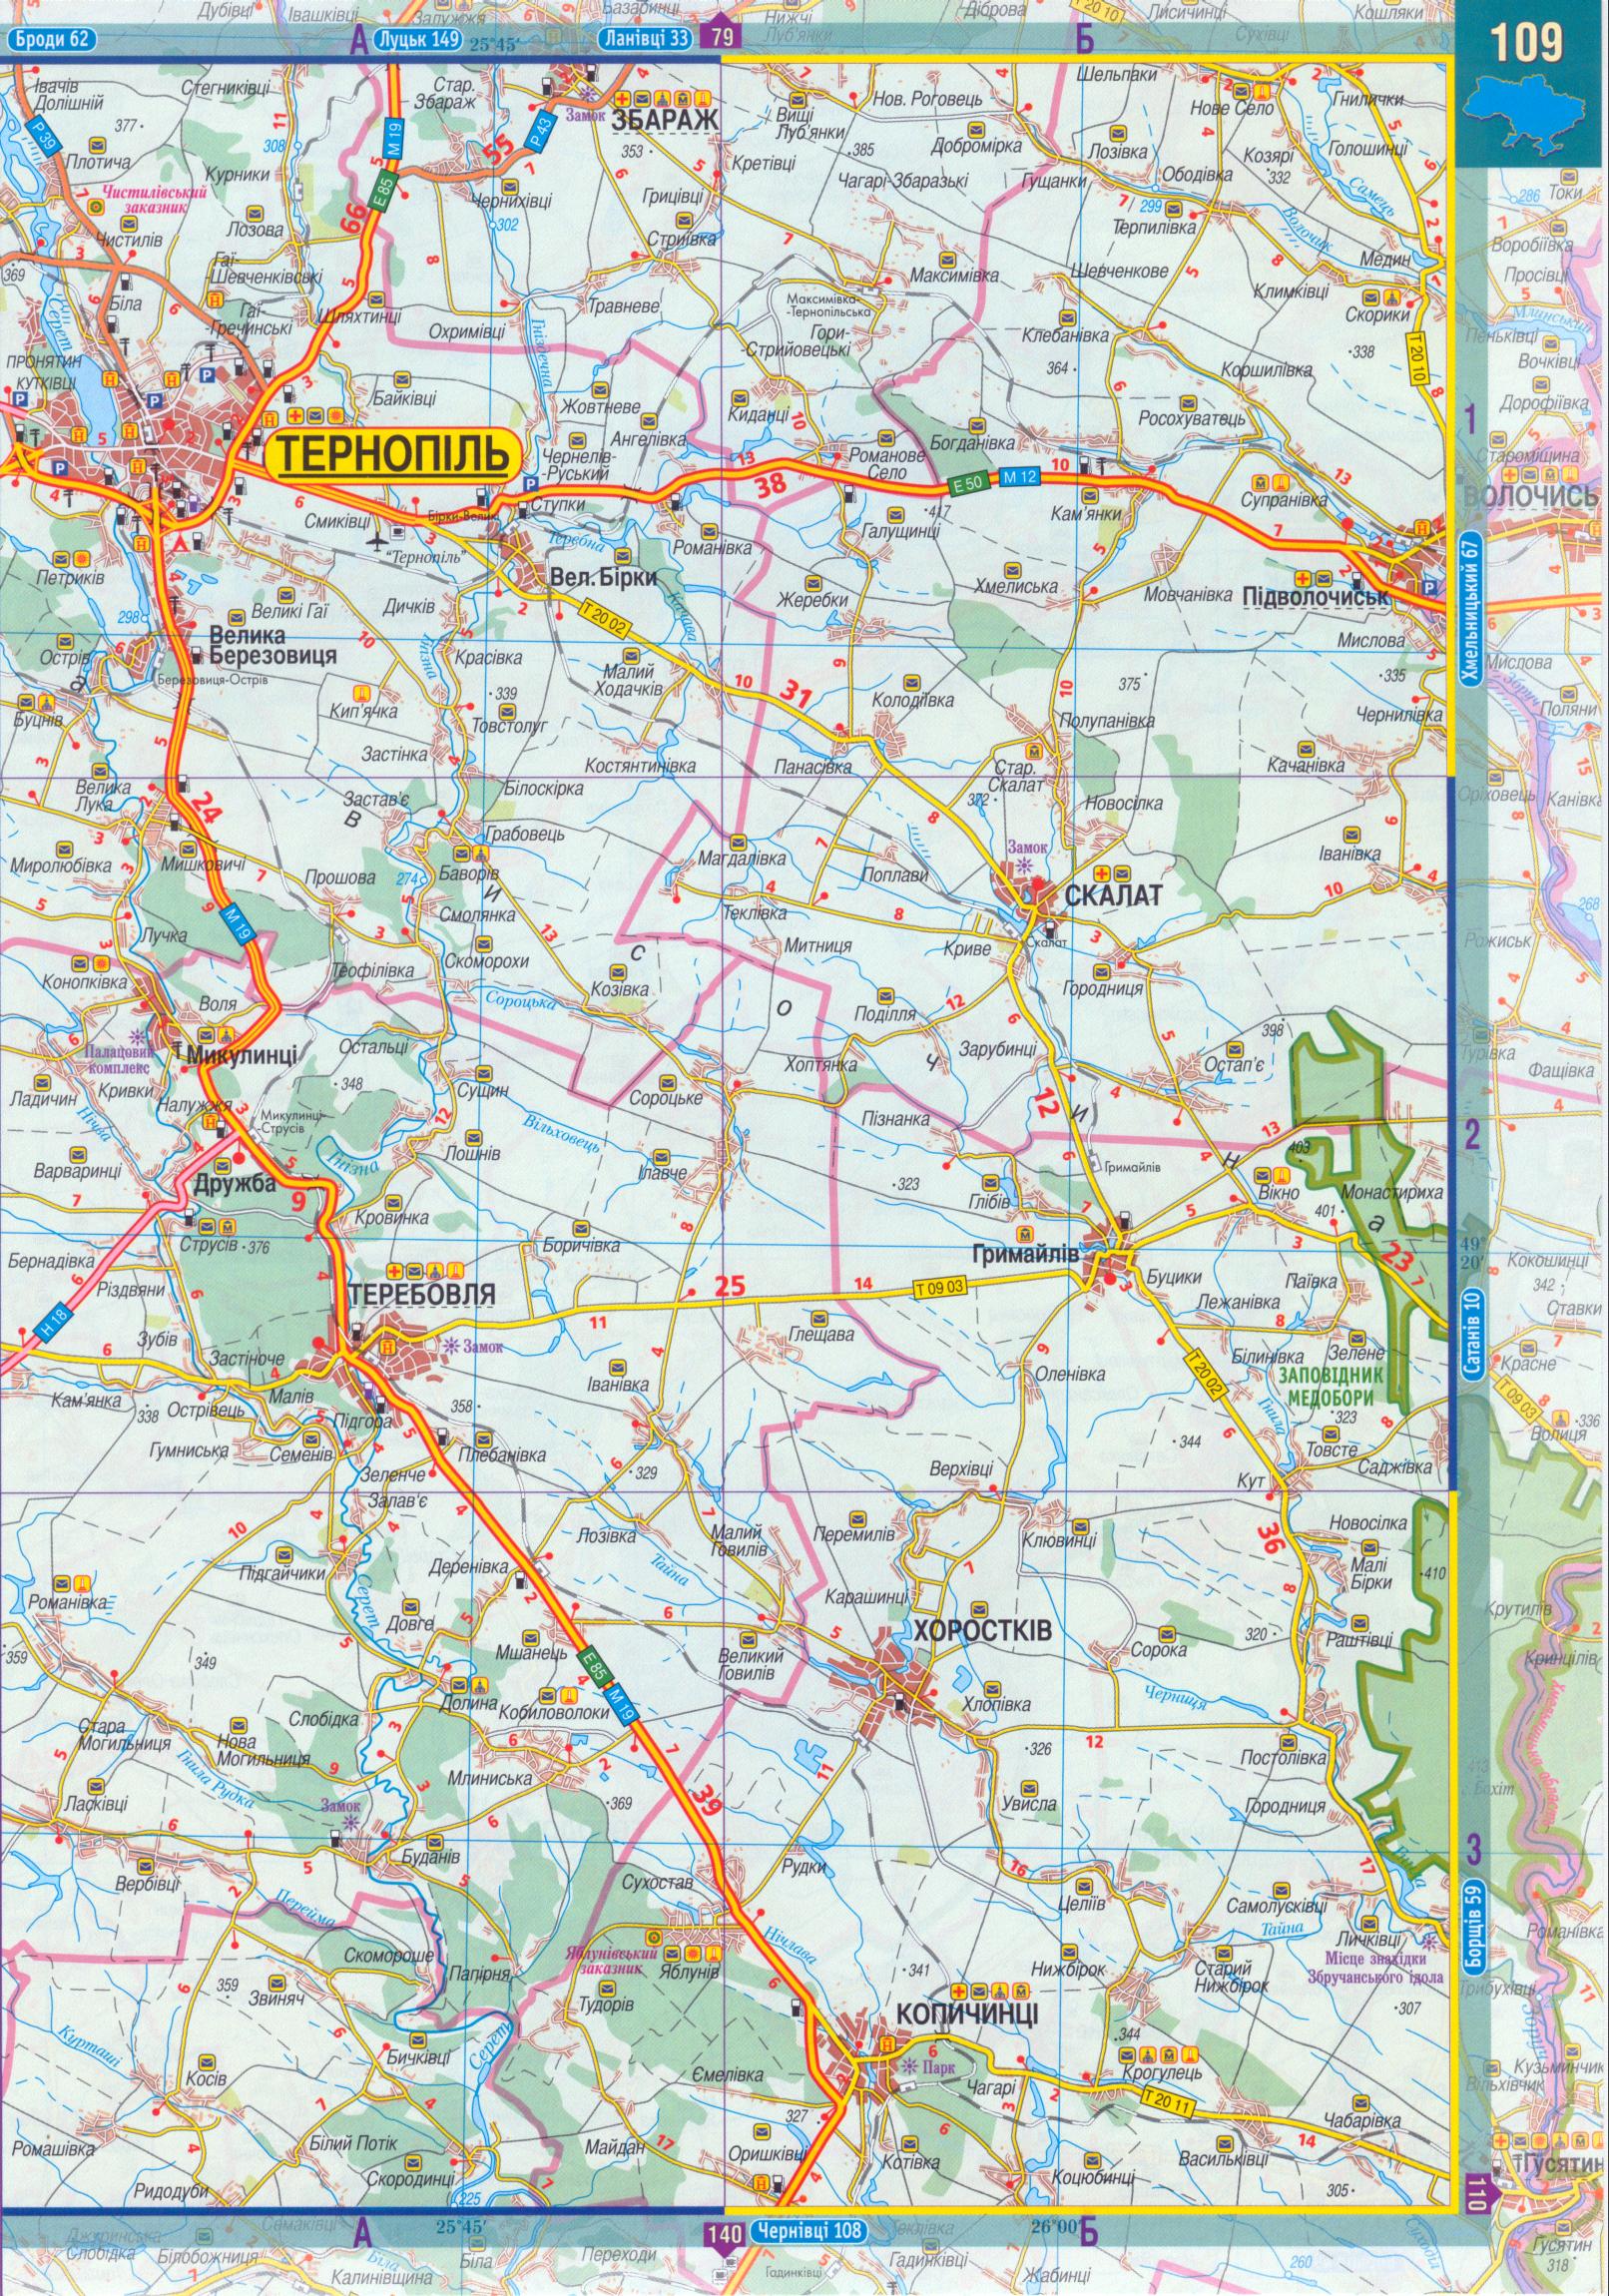 Карта Тернопольской области масштаба 1см:2,5км. Атлас автомобильных дорог 2008 года - карта Тернопольской области, B0 - 